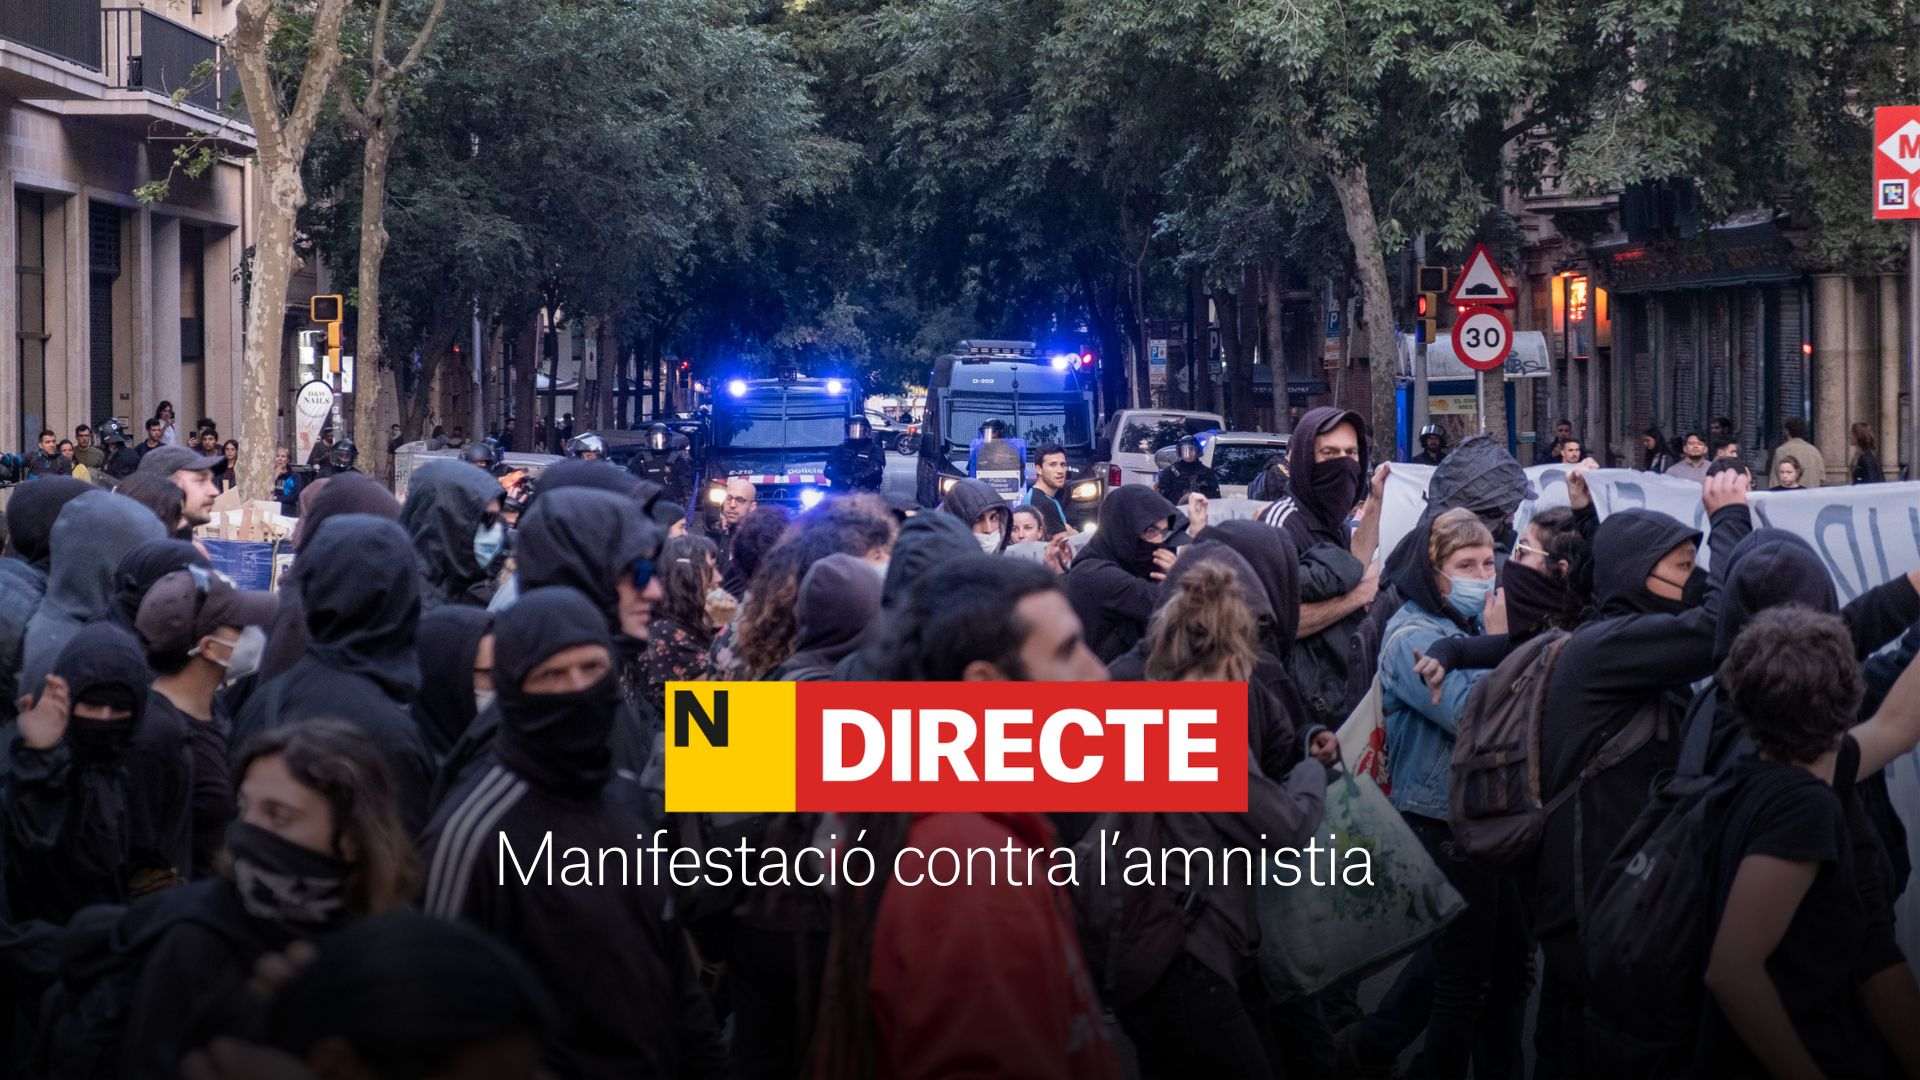 Manifestació a Ferraz contra l'amnistia avui, DIRECTE | Últimes notícies del 13 de novembre